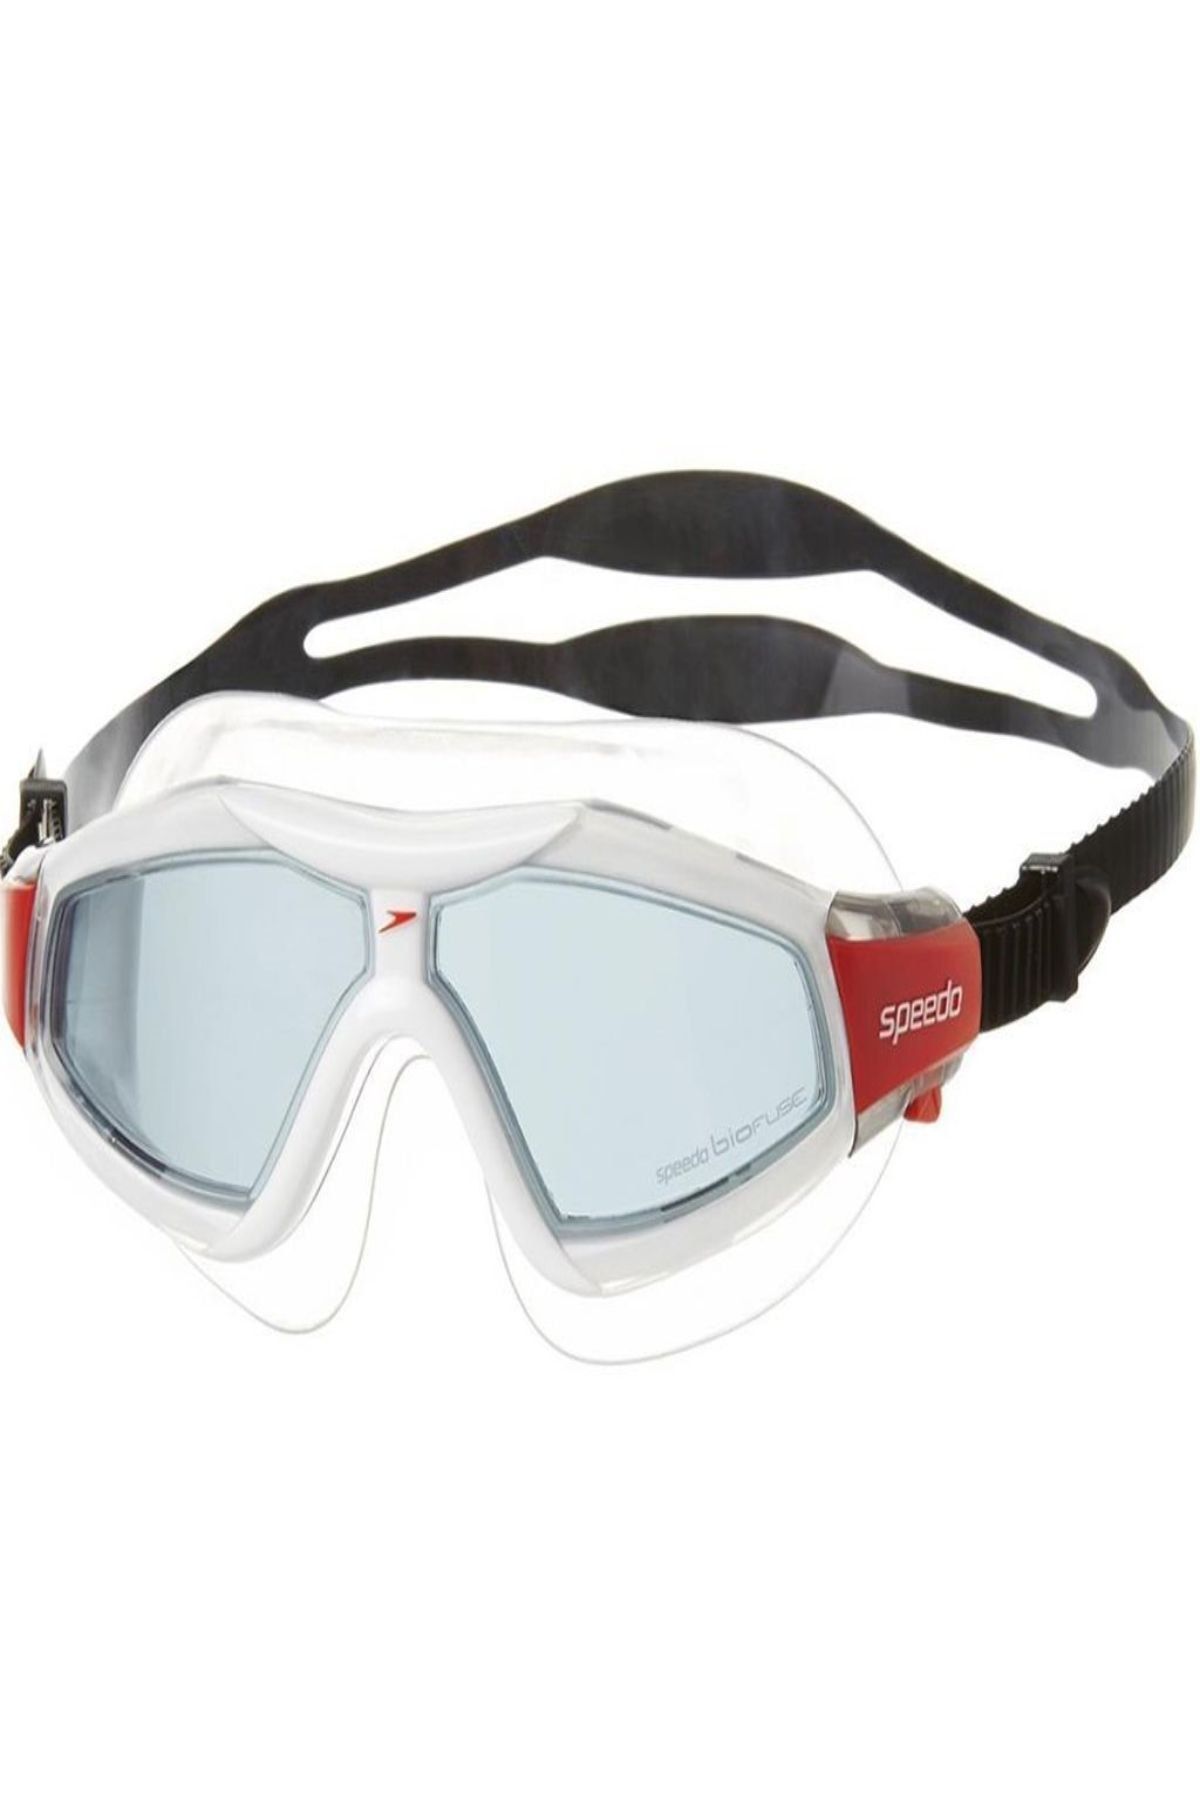 SPEEDO Rift Pro Yüzücü Maskesi - Kırmızı/Gri